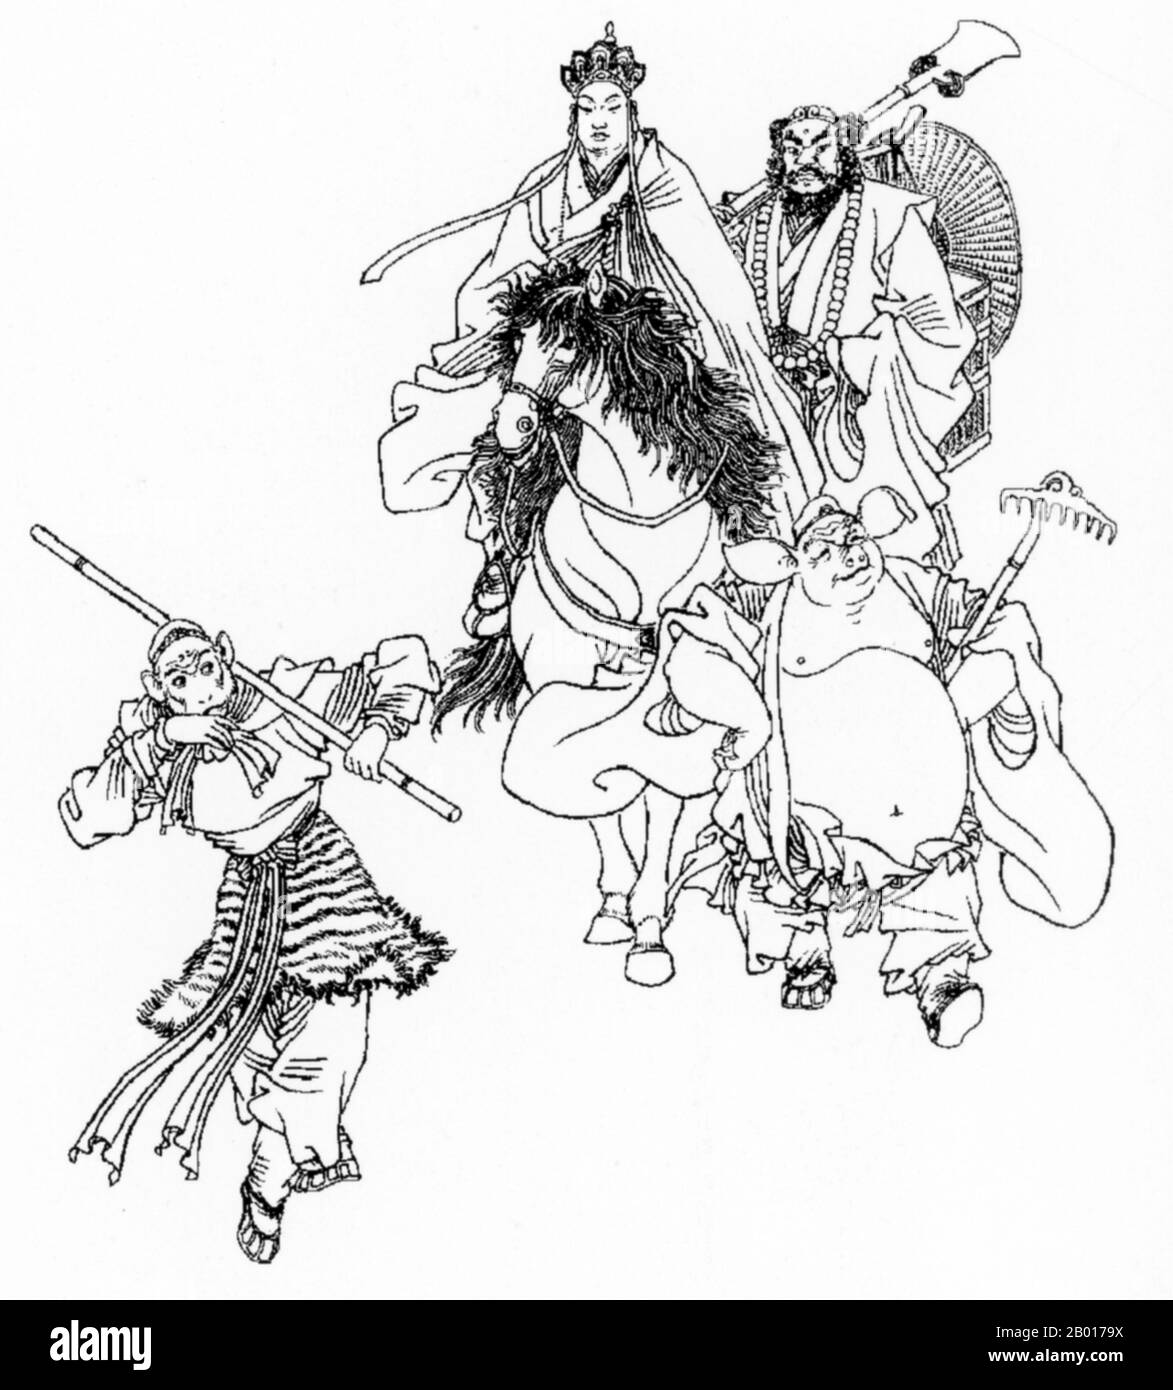 China: Eine Zeichnung des Mönchs Xuanzang mit seinen Gefährten aus dem Xiyouji oder „Reise in den Westen“. Die Reise in den Westen ist einer der vier großen klassischen Romane der chinesischen Literatur. Die ursprünglich in den Jahren 1590s während der Ming-Dynastie anonym veröffentlichte Autorschaft wird dem Gelehrten Wu Cheng'en seit dem 20th. Jahrhundert zugeschrieben. In englischsprachigen Ländern wird die Geschichte auch oft einfach als Monkey bezeichnet. Der Roman ist eine fiktionalisierte Darstellung der legendären Pilgerreise des buddhistischen Mönchs Xuanzang nach Indien. Während der Tang-Dynastie reiste der Mönch in die westlichen Regionen. Stockfoto